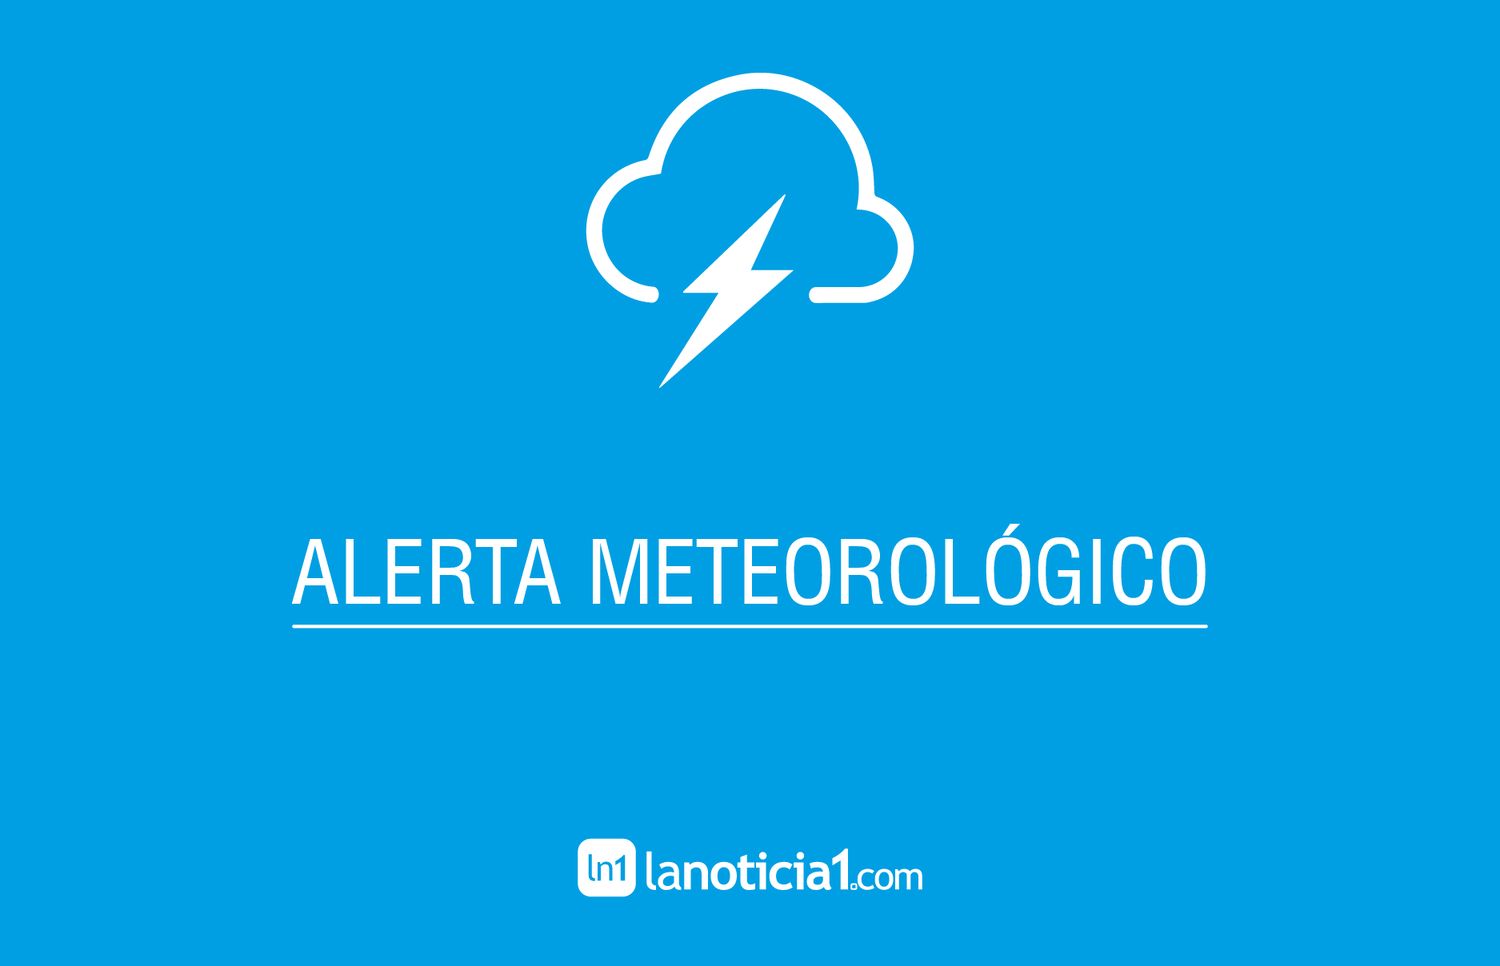 Gran parte de la Provincia de Buenos Aires sigue bajo alerta meteorológico